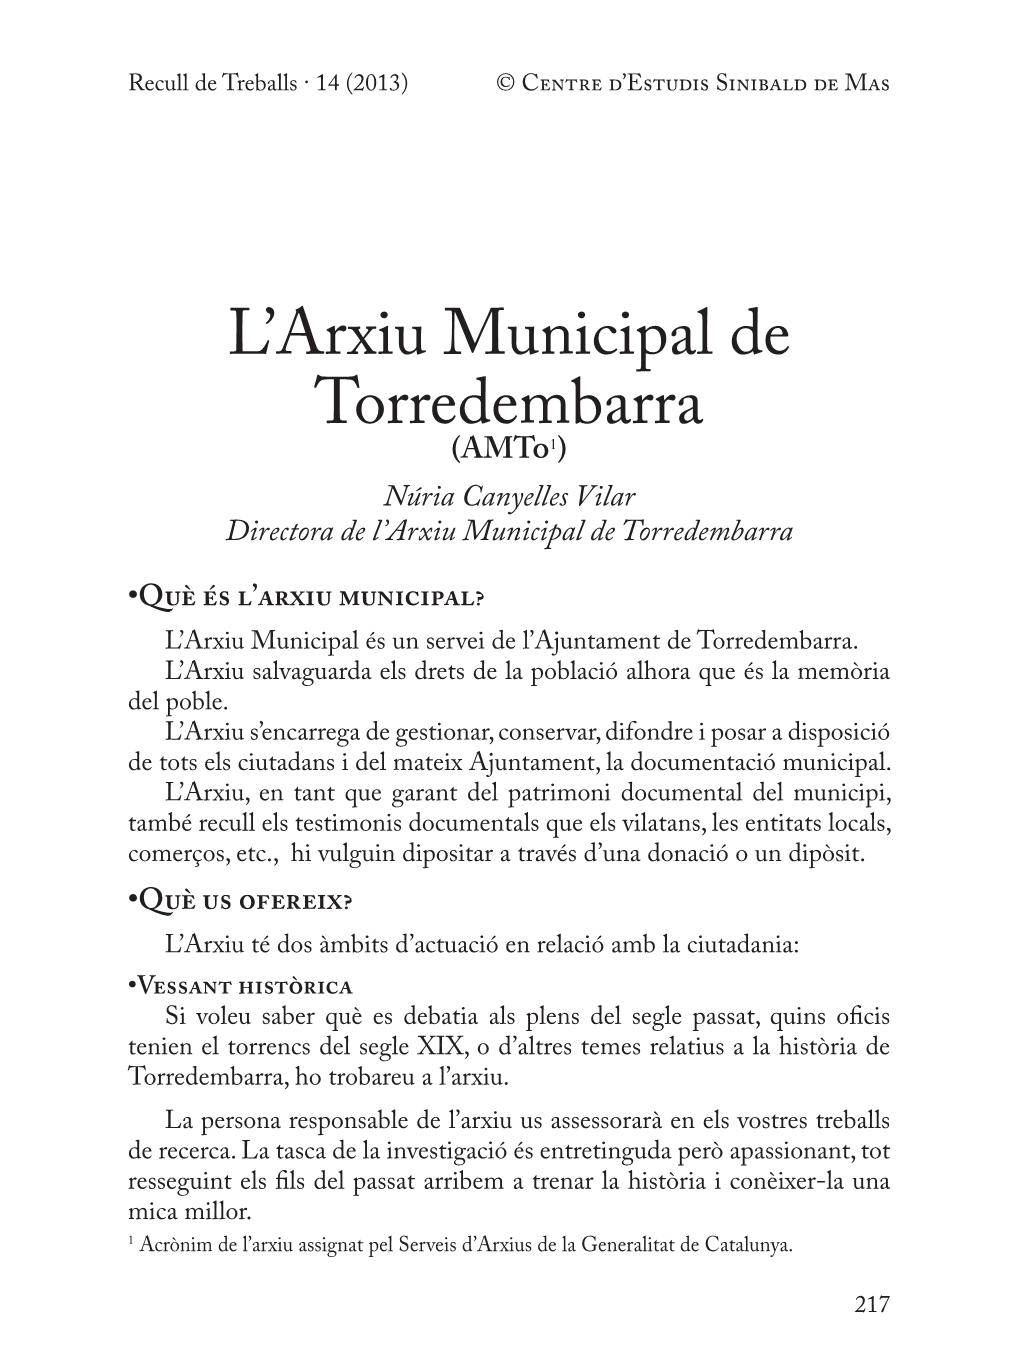 L'arxiu Municipal De Torredembarra